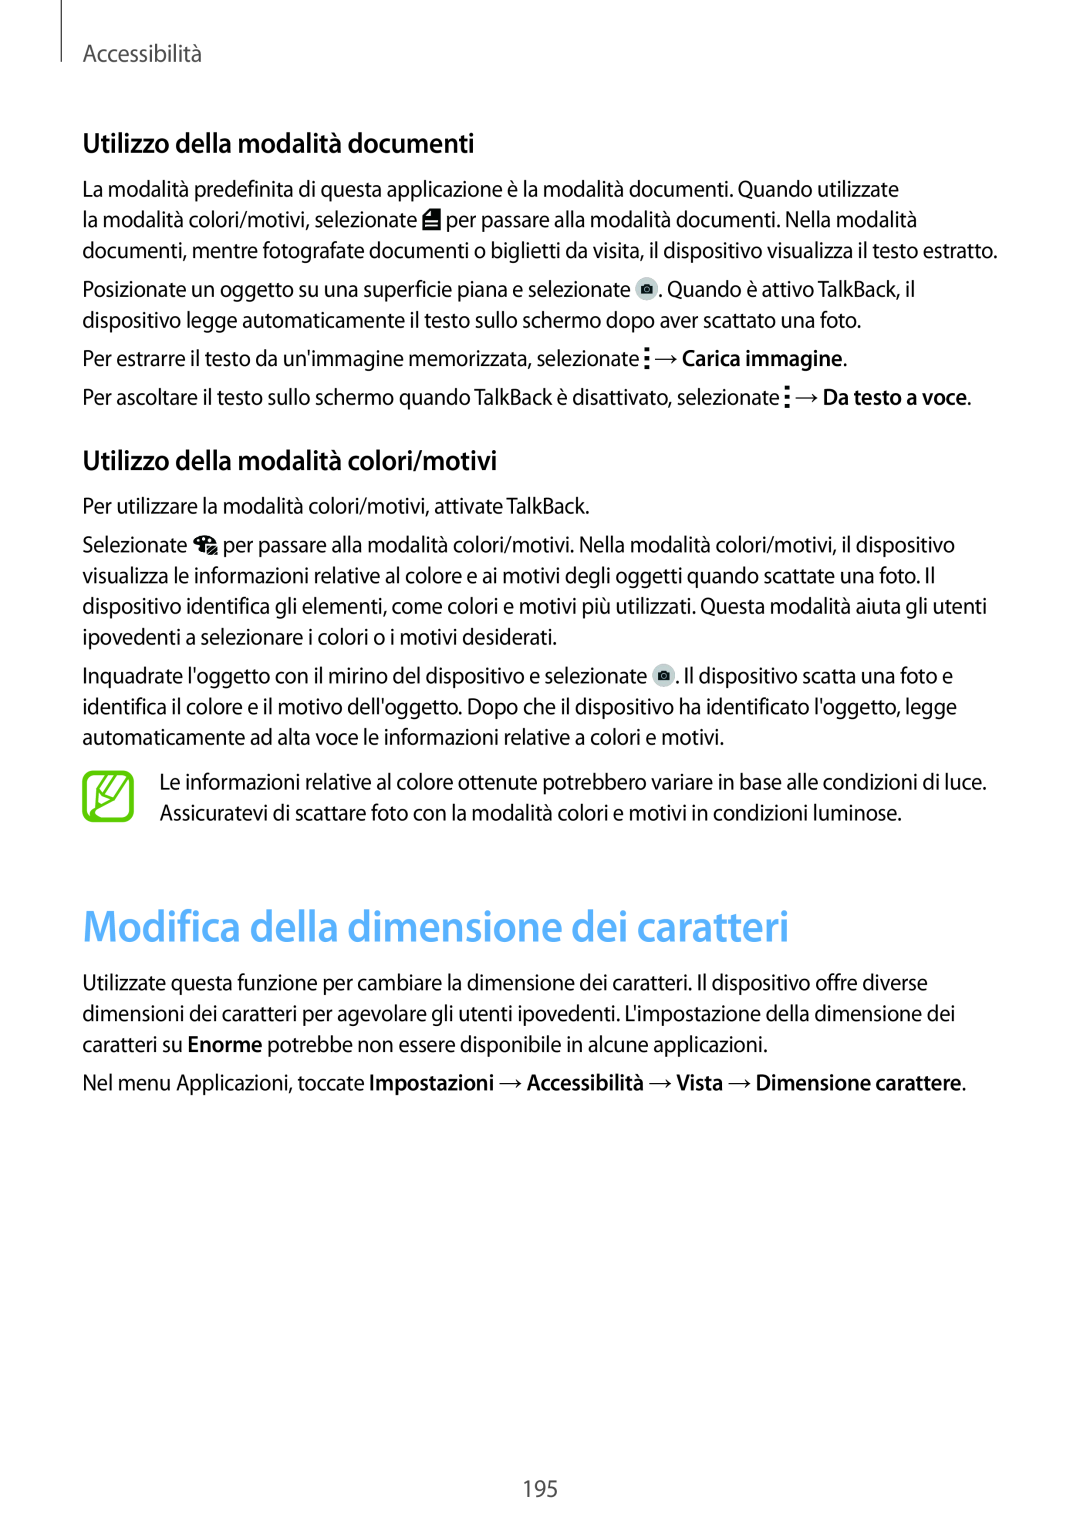 Samsung SM-G900FZBAITV manual Modifica della dimensione dei caratteri, Utilizzo della modalità documenti, Accessibilità 